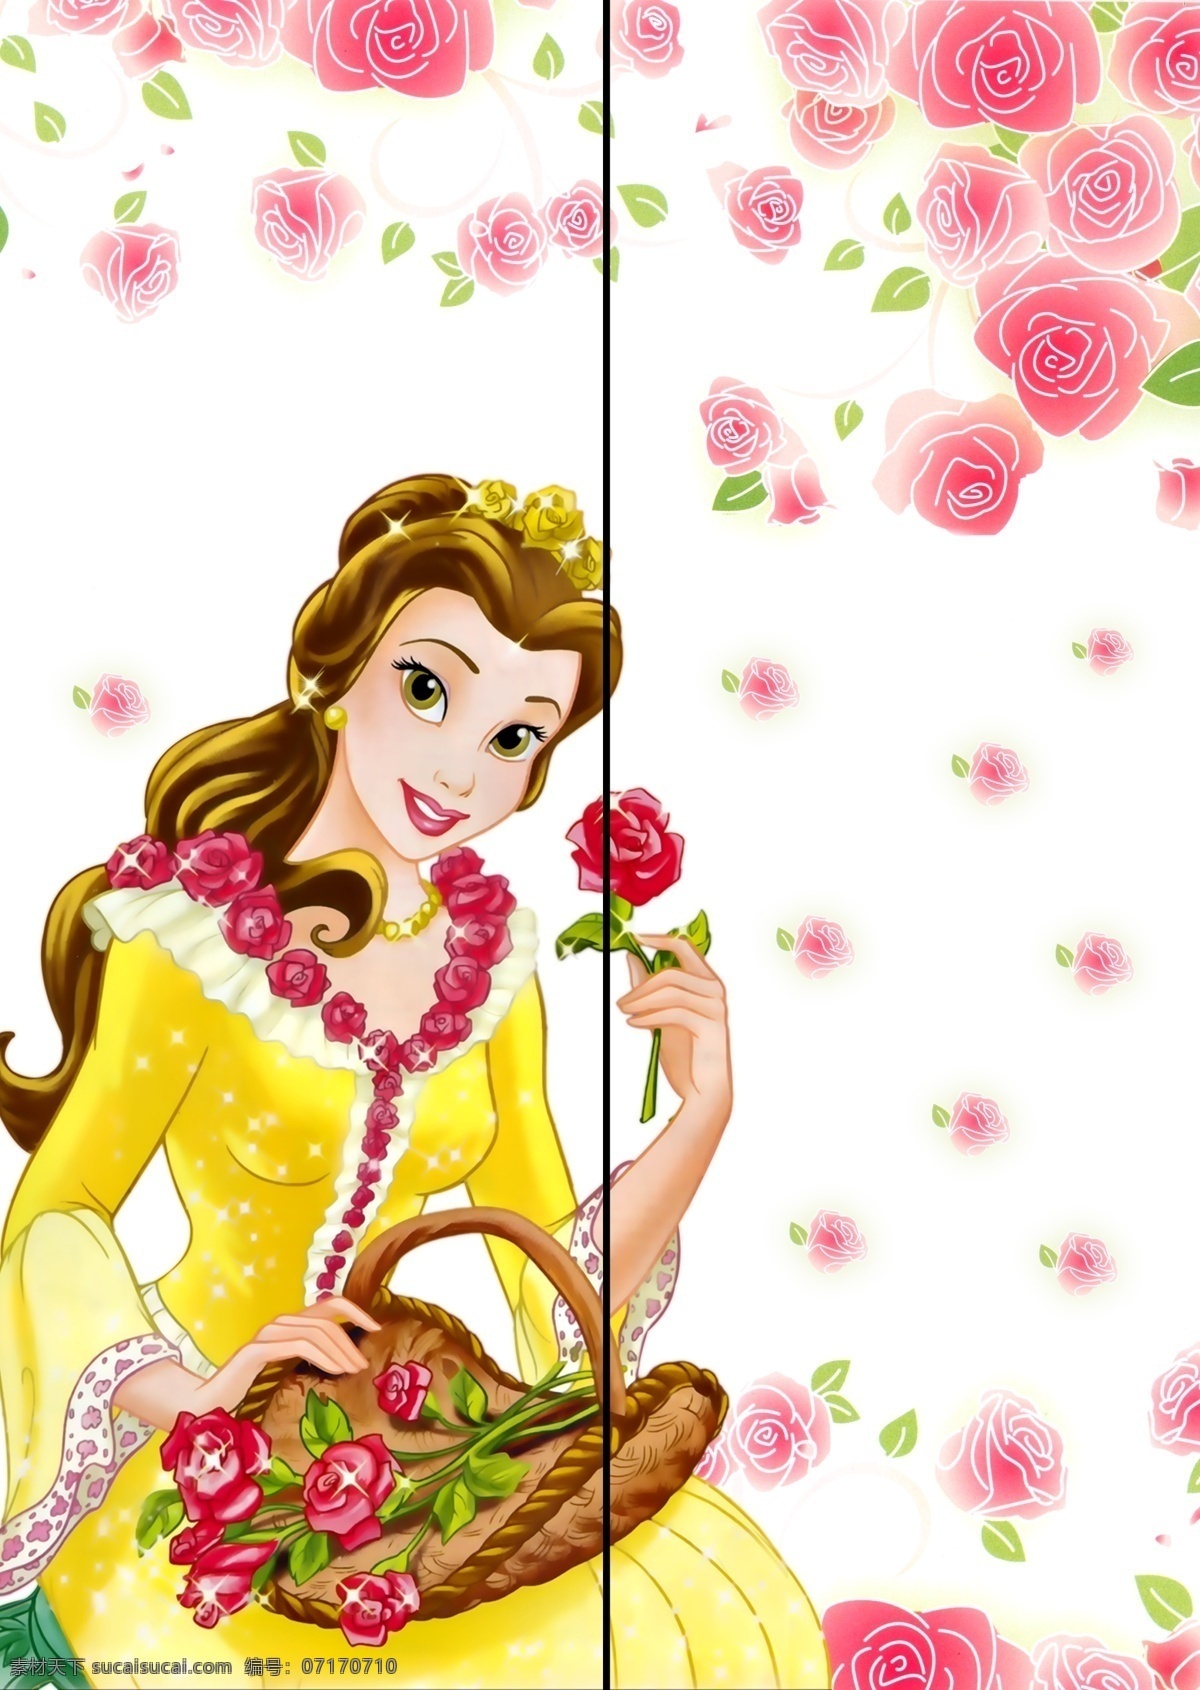 公主 广告设计模板 花朵 卡通 玫瑰 漂亮 鲜花 移门贝儿公主 移门 贝儿 移门图案 源文件 家居装饰素材